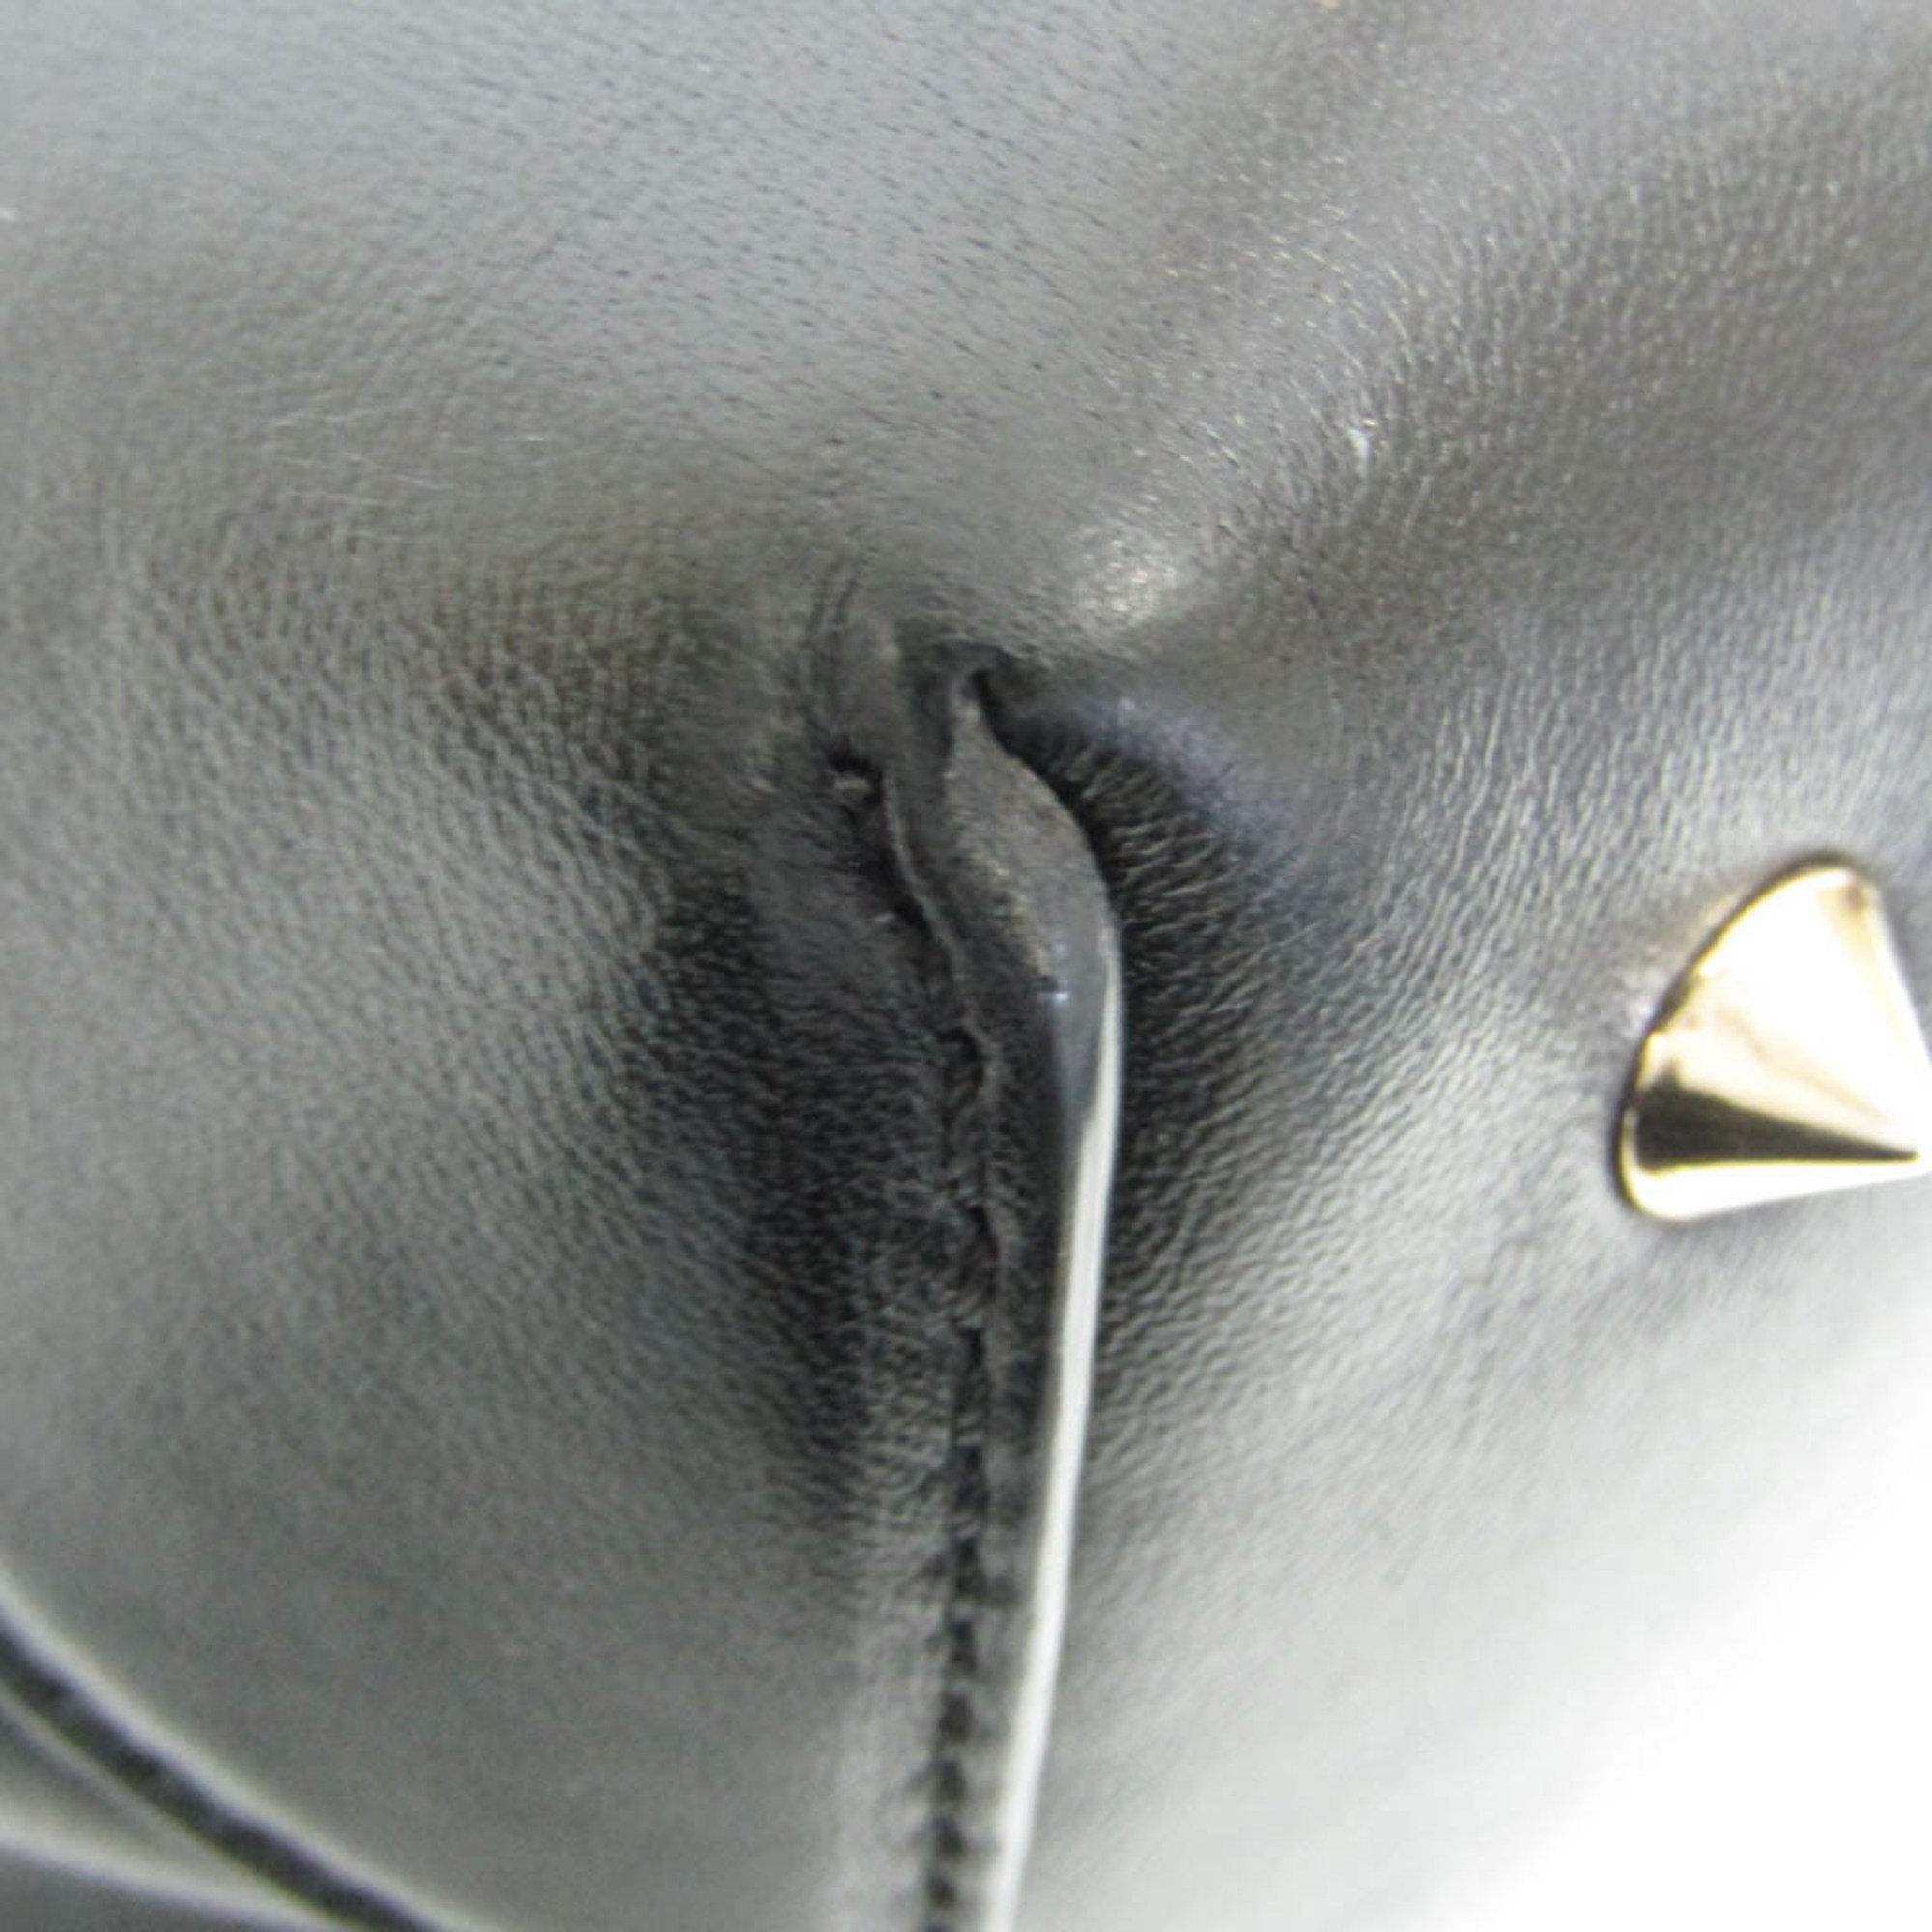 Givenchy Lucrezia EF 4 0413 Women's Leather Handbag,Shoulder Bag Black